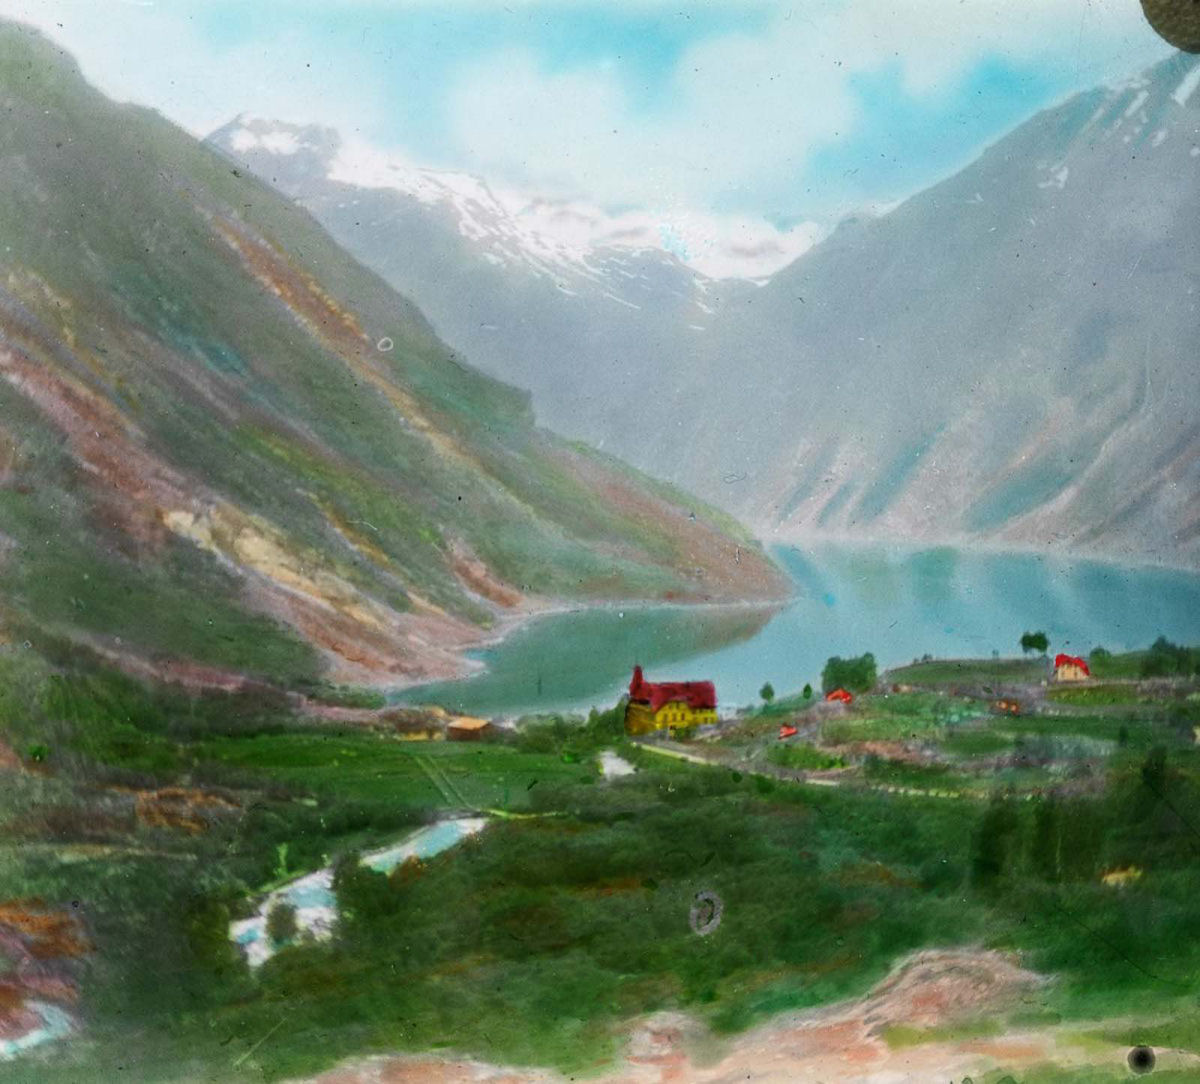 Incríveis fotos antigas da Noruega criadas a partir de slides de lanterna mágica 10